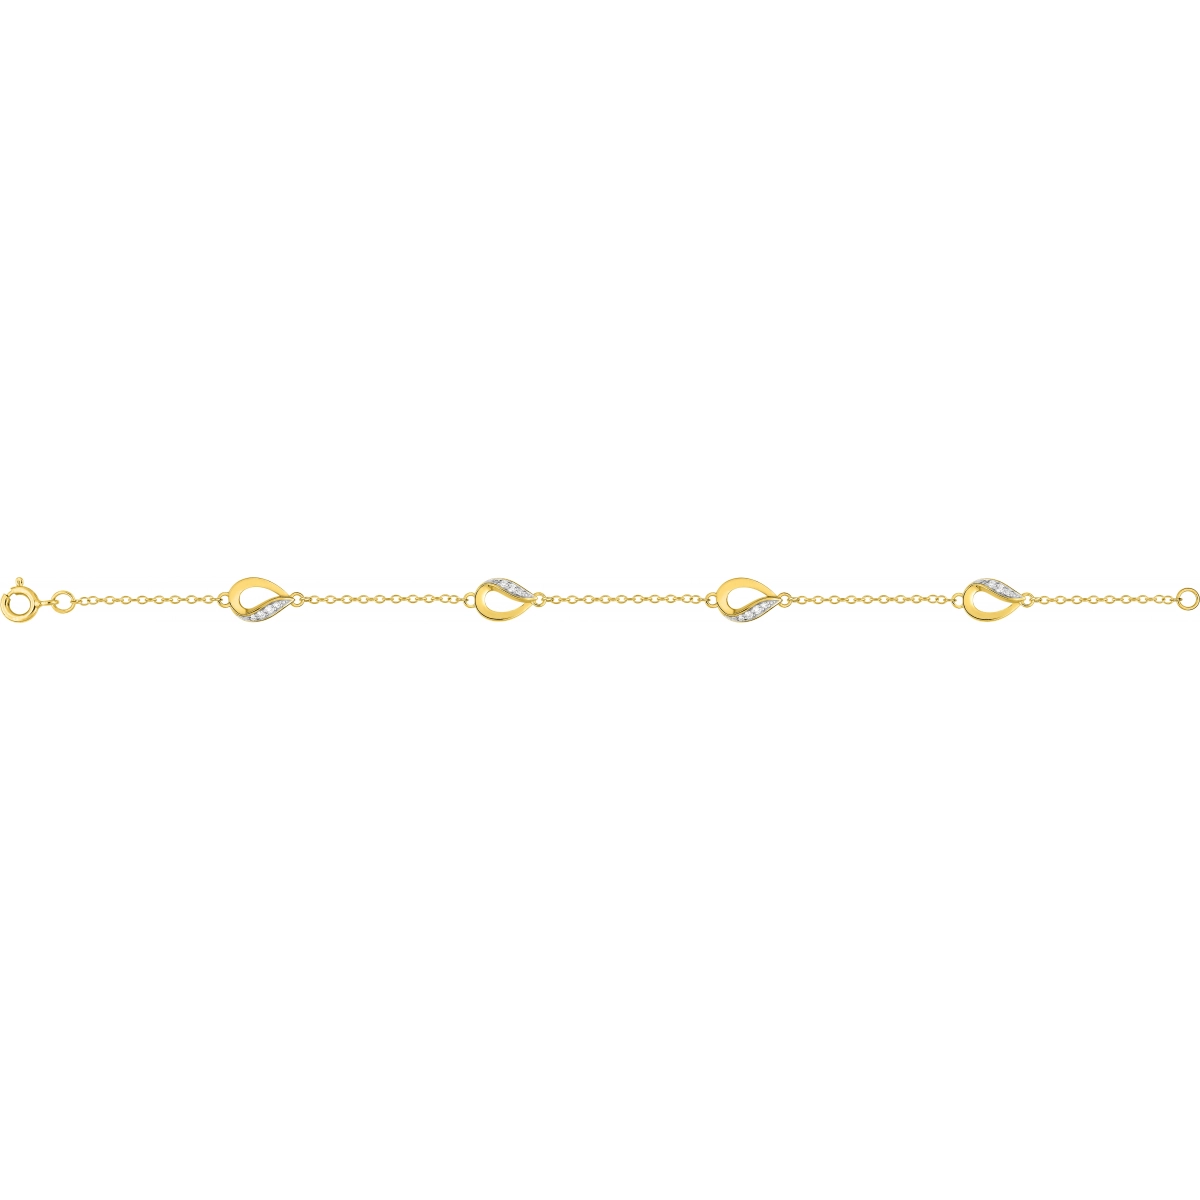 Bracelet 18cm w. cz gold plated Brass 2TG  Lua Blanca  BSBV25Z18.0